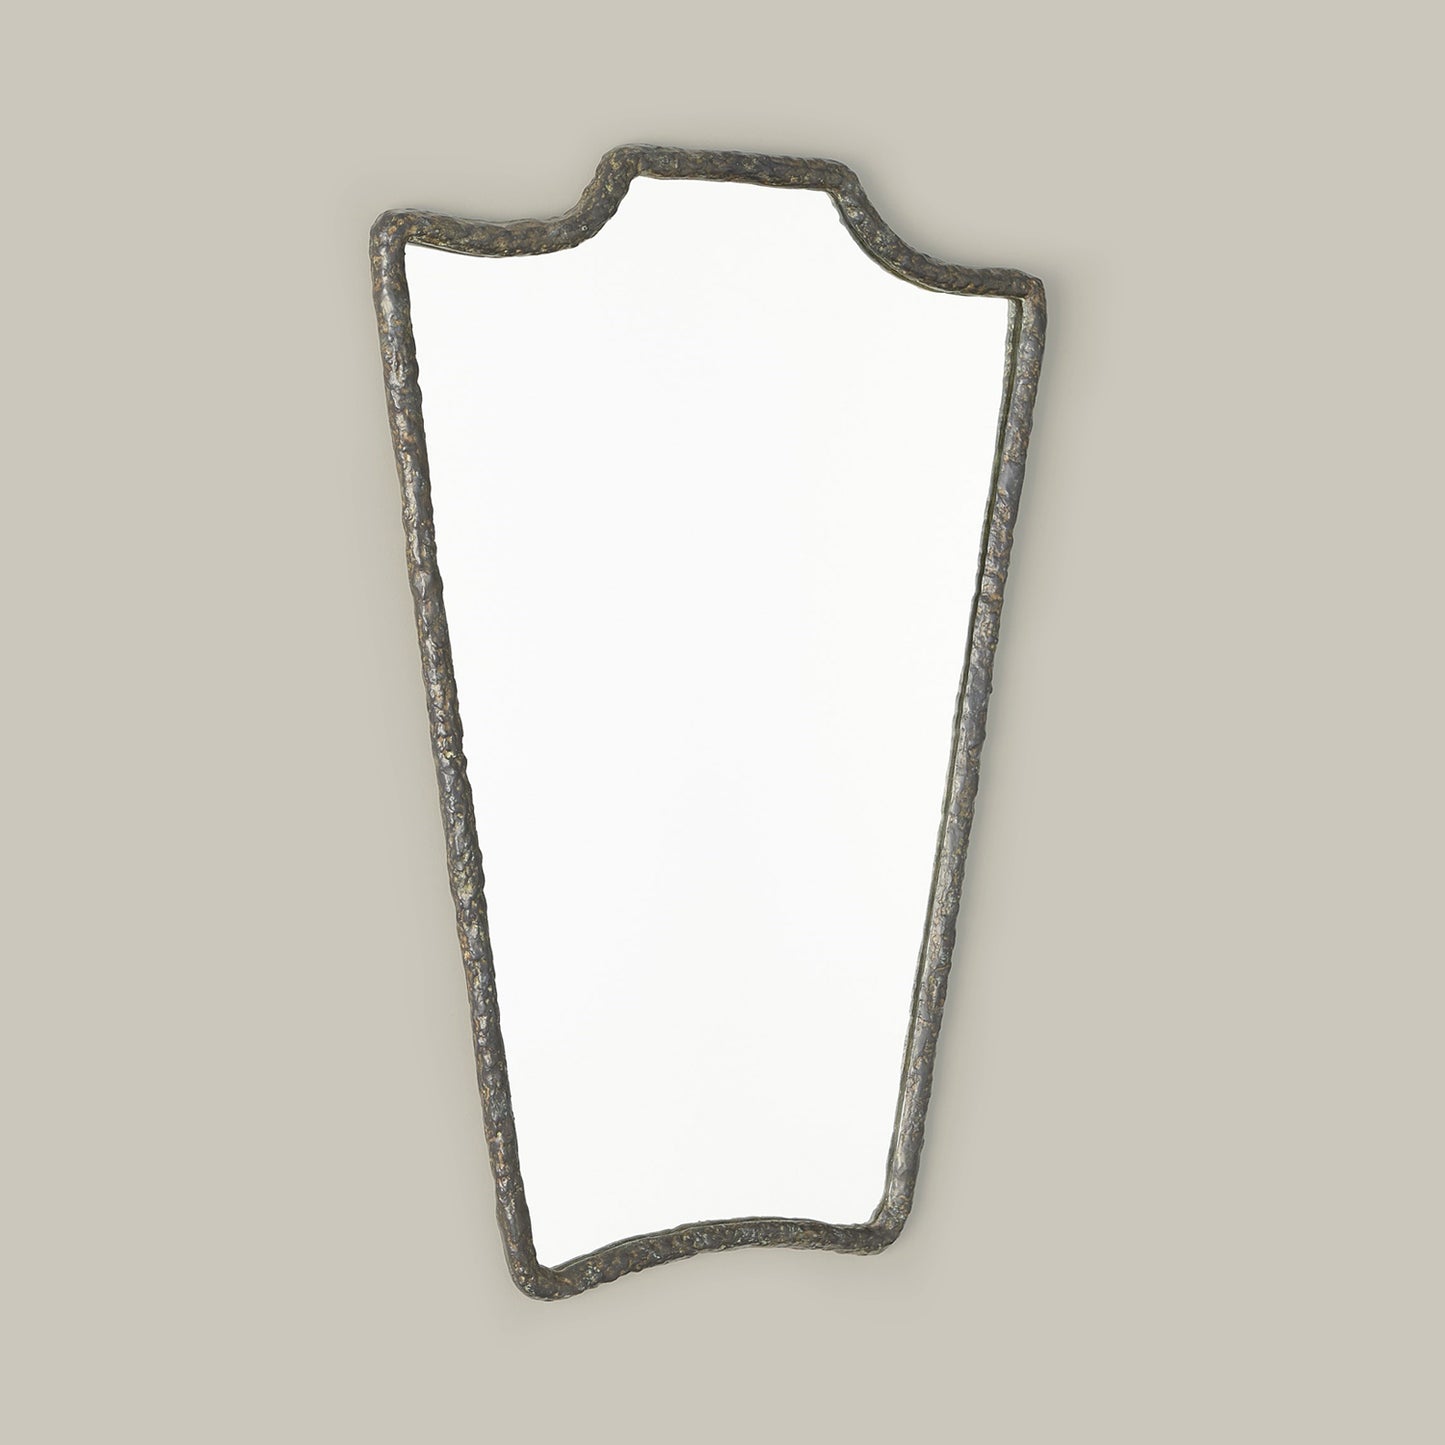 Bouclier Mirror - Preorder